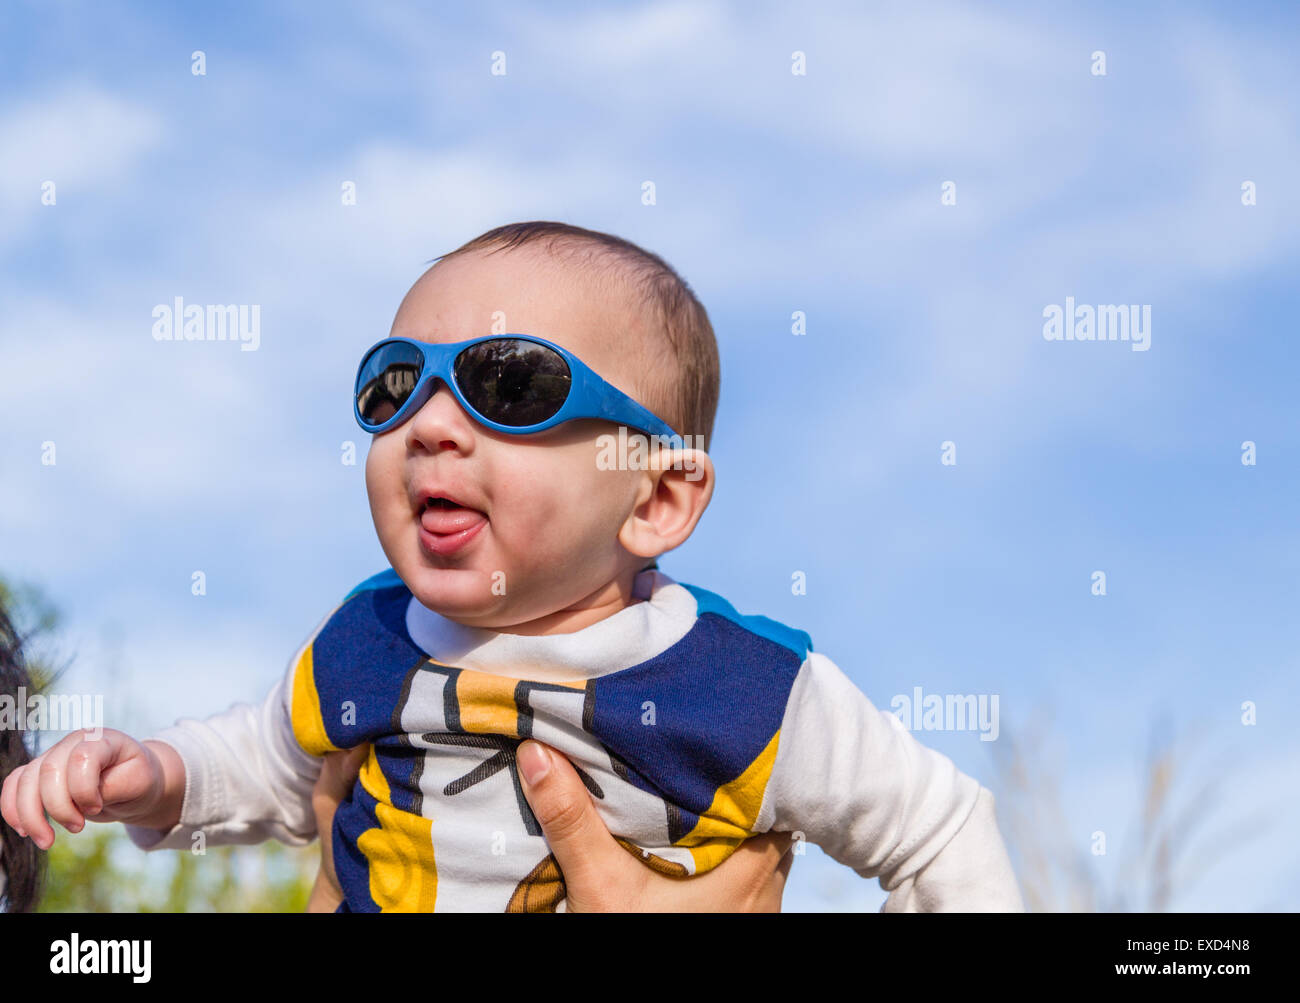 Carino 6 mesi baby con luce marrone capelli in bianco, blu e bruno camicia a maniche lunghe indossando googles blu è abbracciato e tenuto da sua mamma: egli sembra molto felice e sorrisi Foto Stock